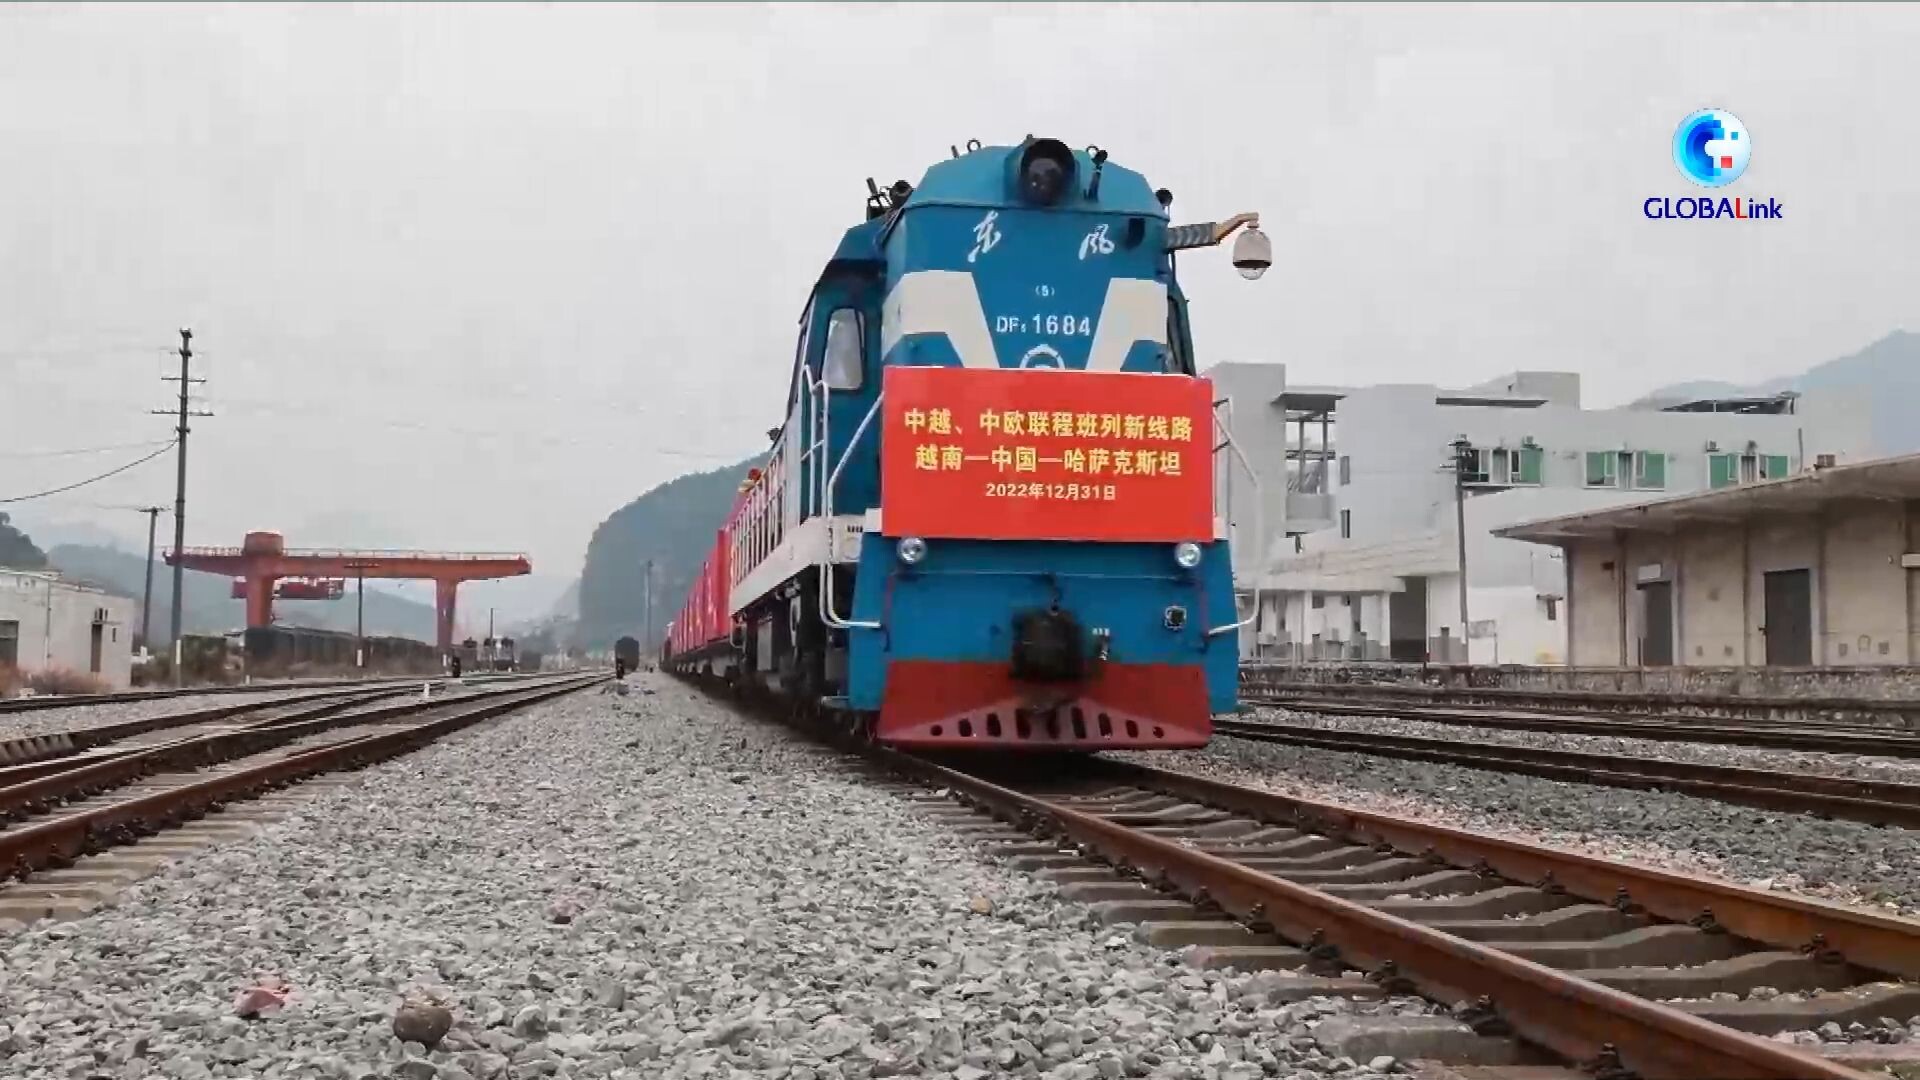 GLOBALink : รถไฟสินค้า 'เวียดนาม-จีน-คาซัคสถาน' วิ่งเที่ยวแรก ประหยัดเวลาเกือบเดือน